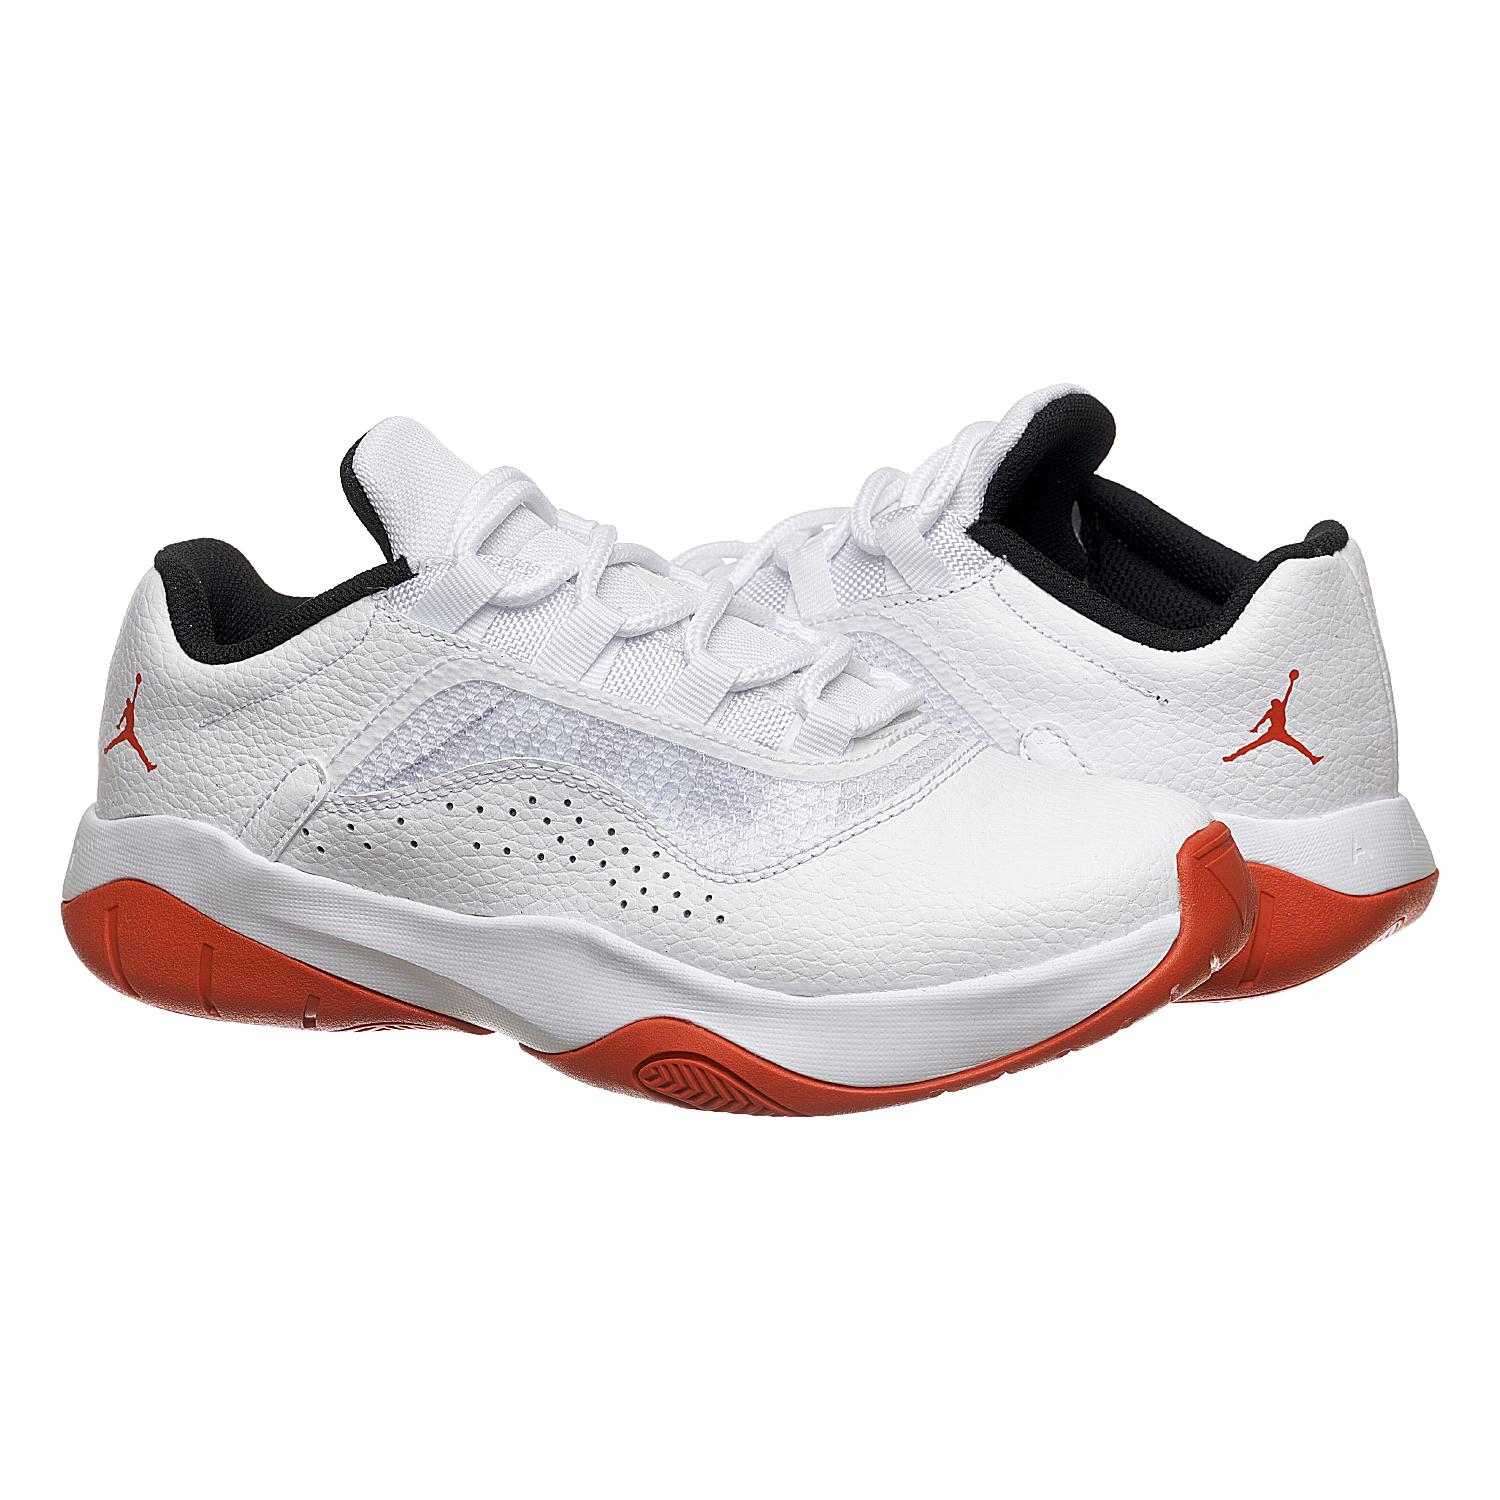 Кросівки жіночі Nike Jordan 11 Cmft Low Gs (CZ0907-106)